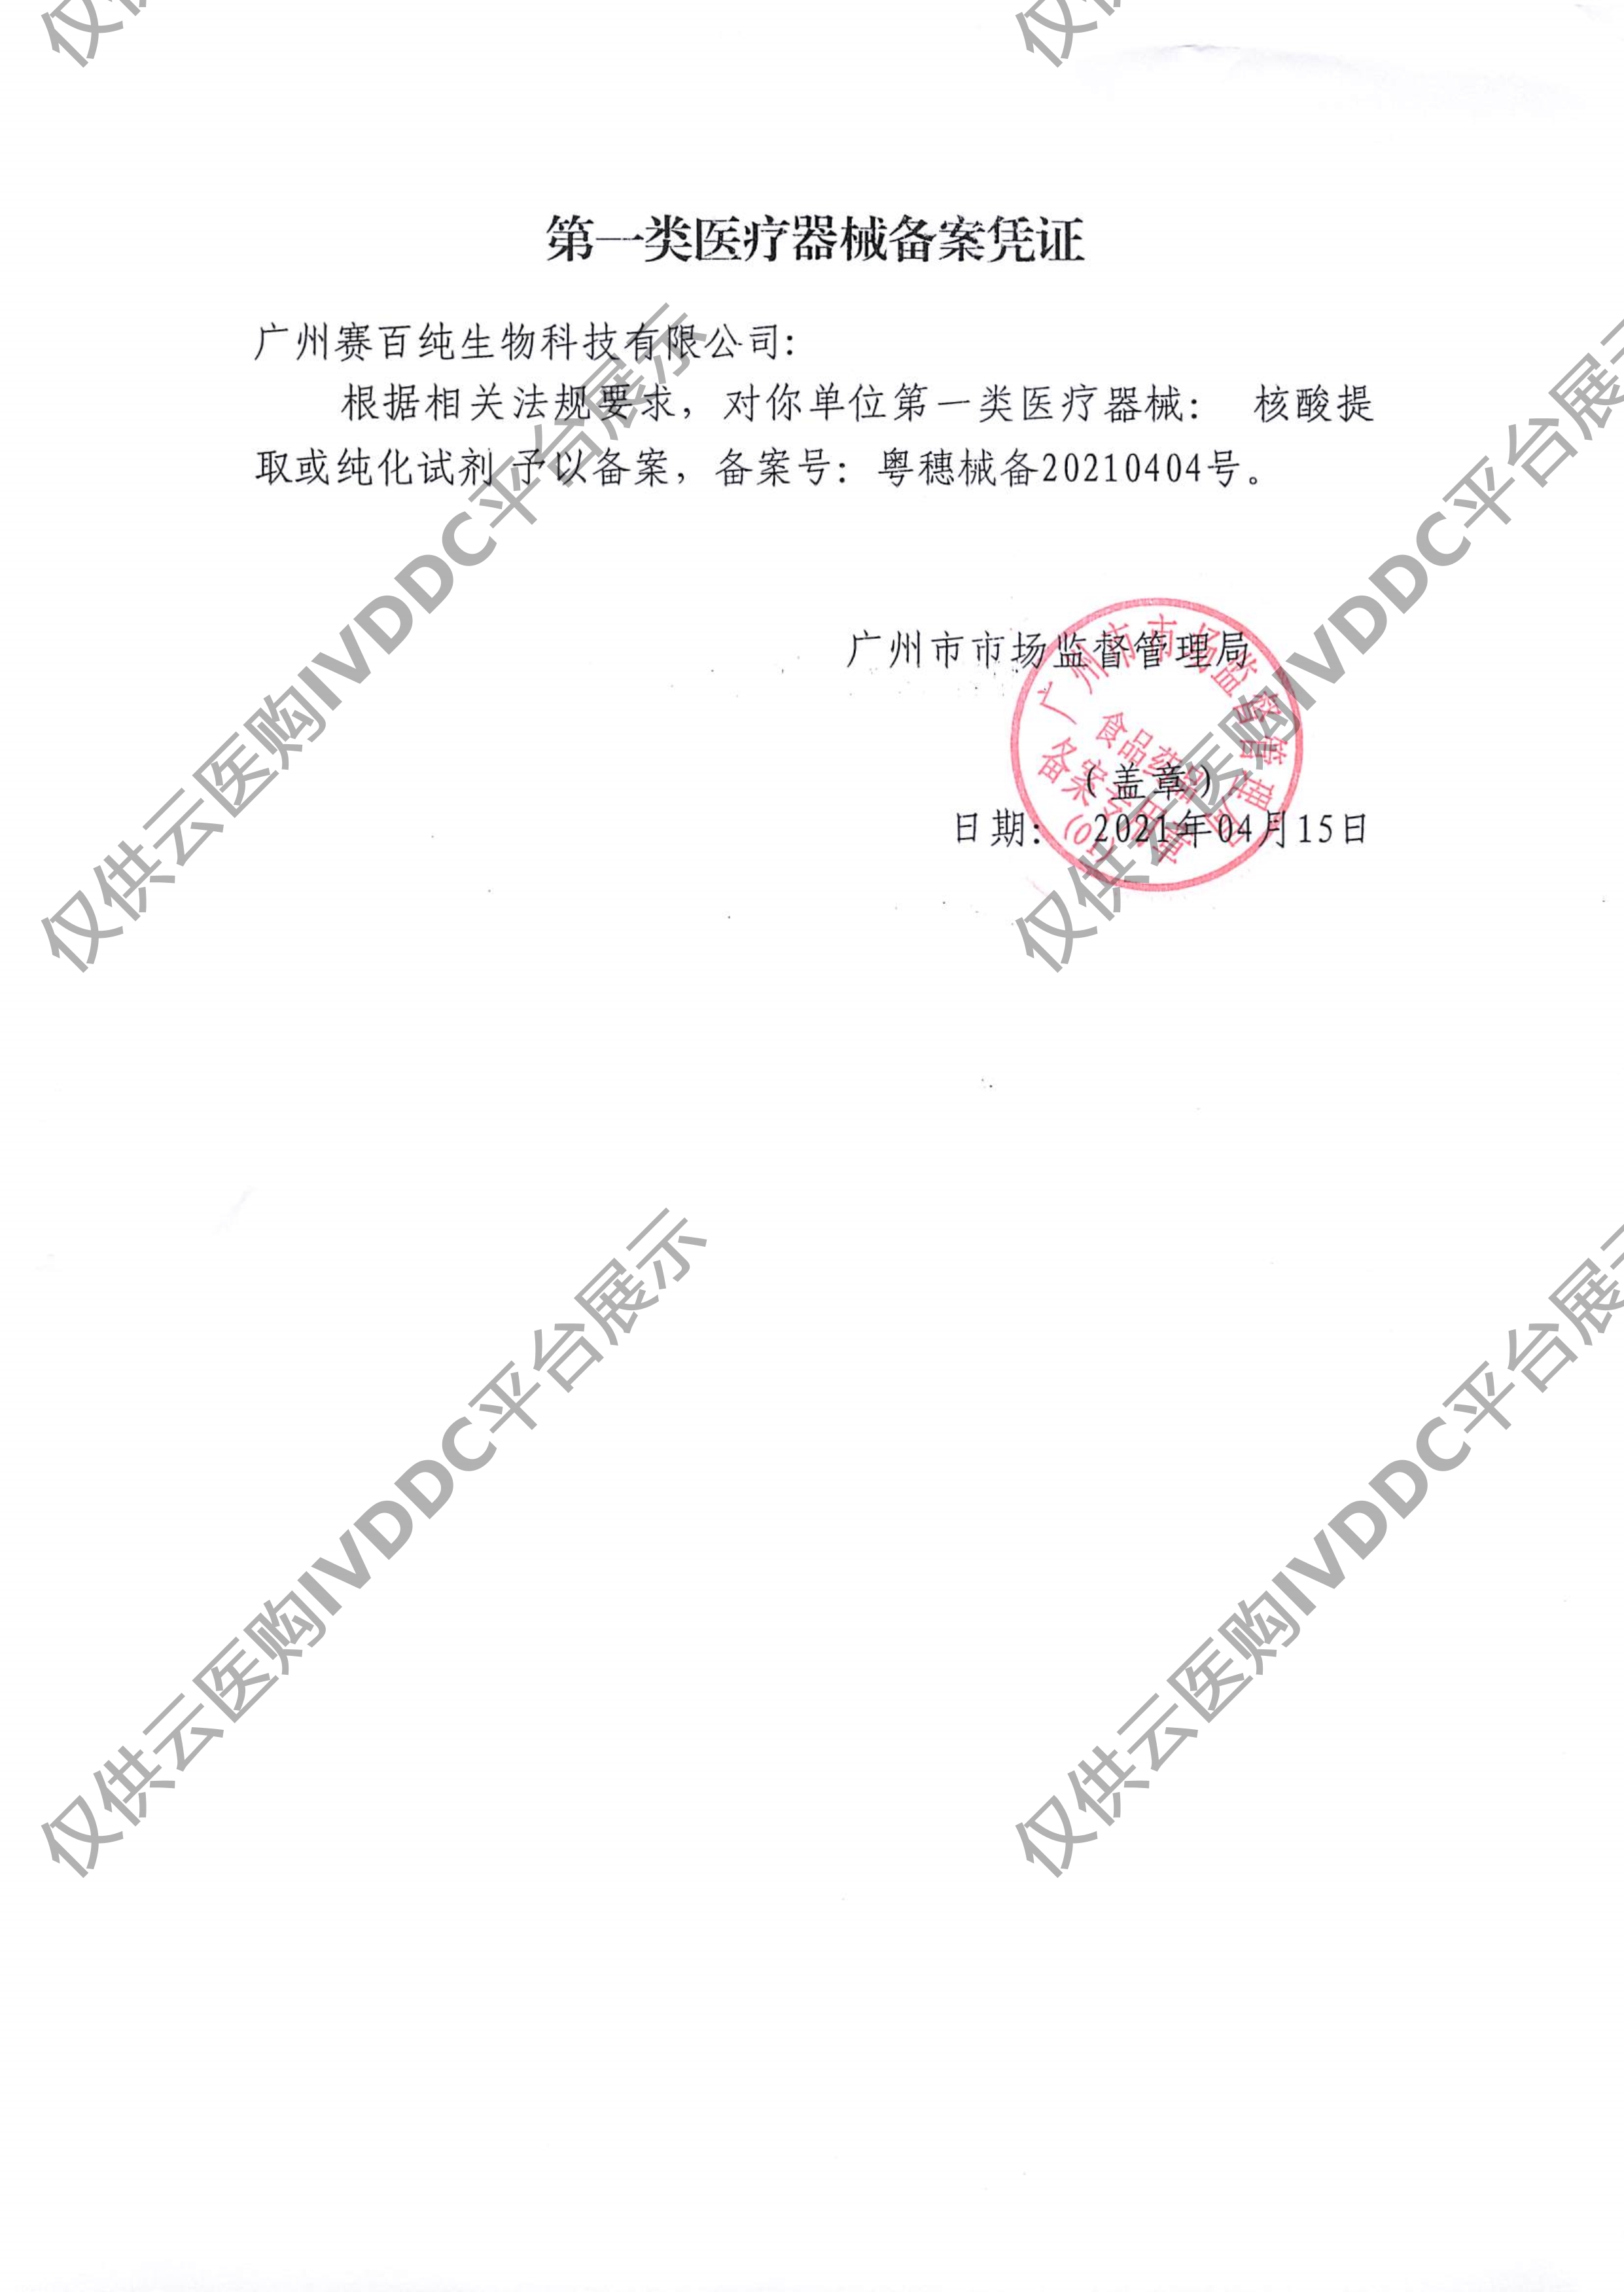 【赛百纯】 核酸提取或纯化试剂 Sup-071601/Sup-071602注册证